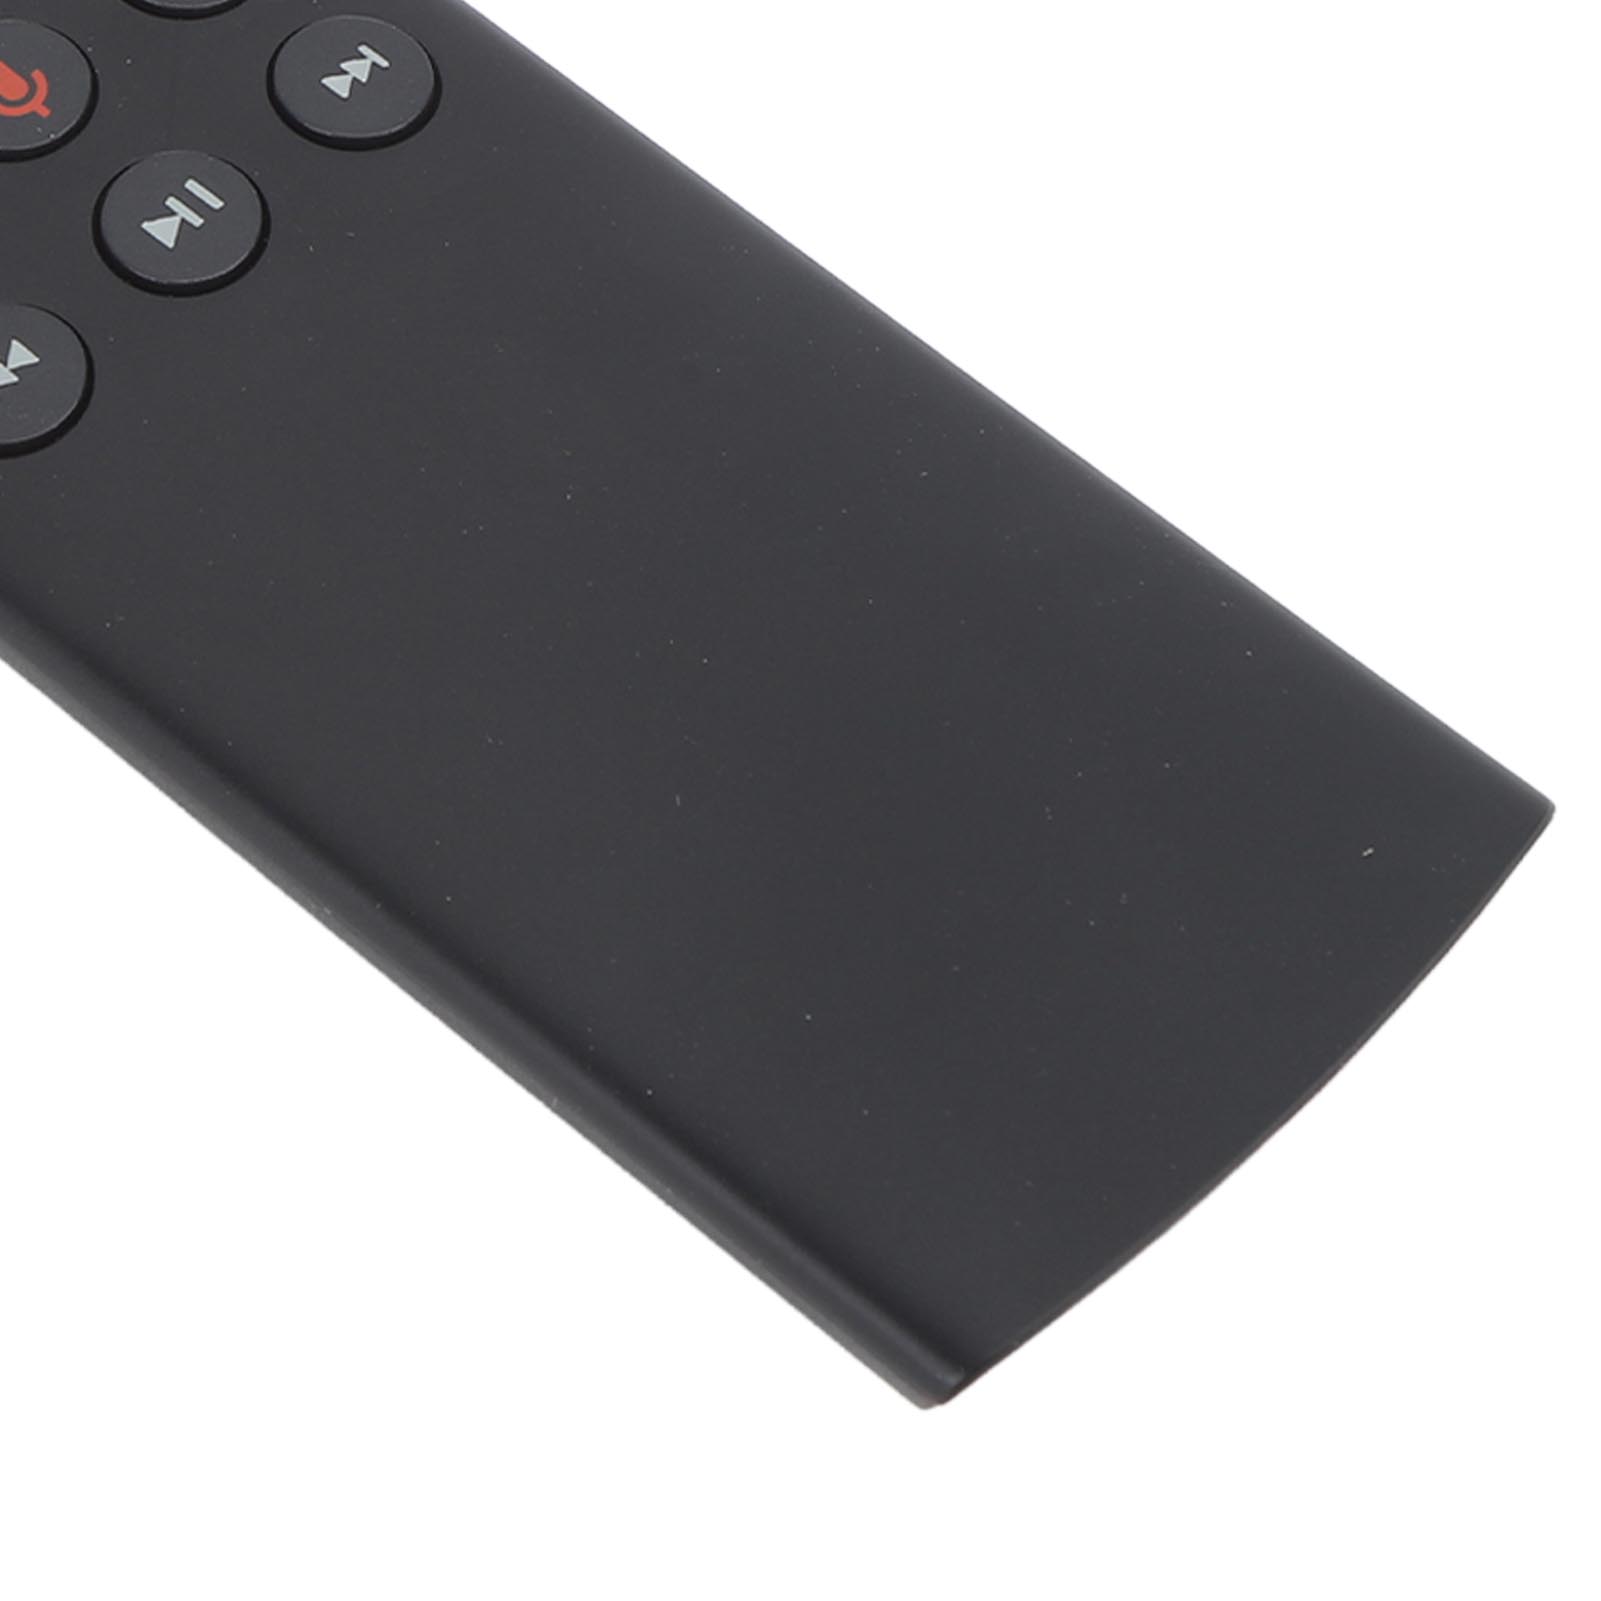 Acheter Télécommande sans fil G10 2,4 GHz avec récepteur USB, commande  vocale pour Android TV Box PC portable